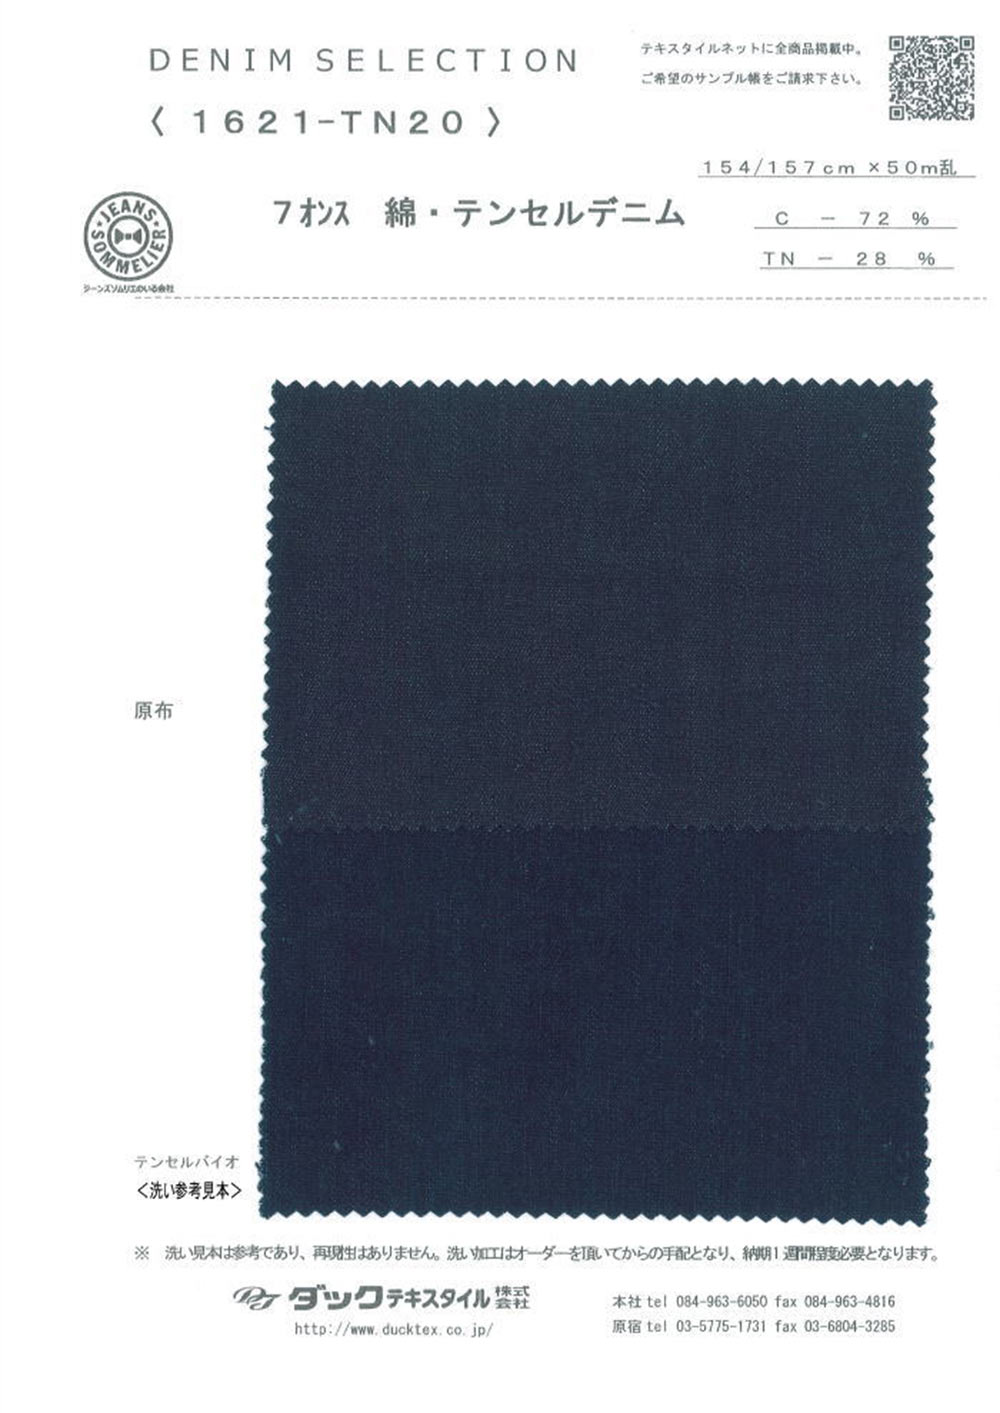 1621-TN20 7 Oz Cotton Tencel Denim[Textile / Fabric] DUCK TEXTILE